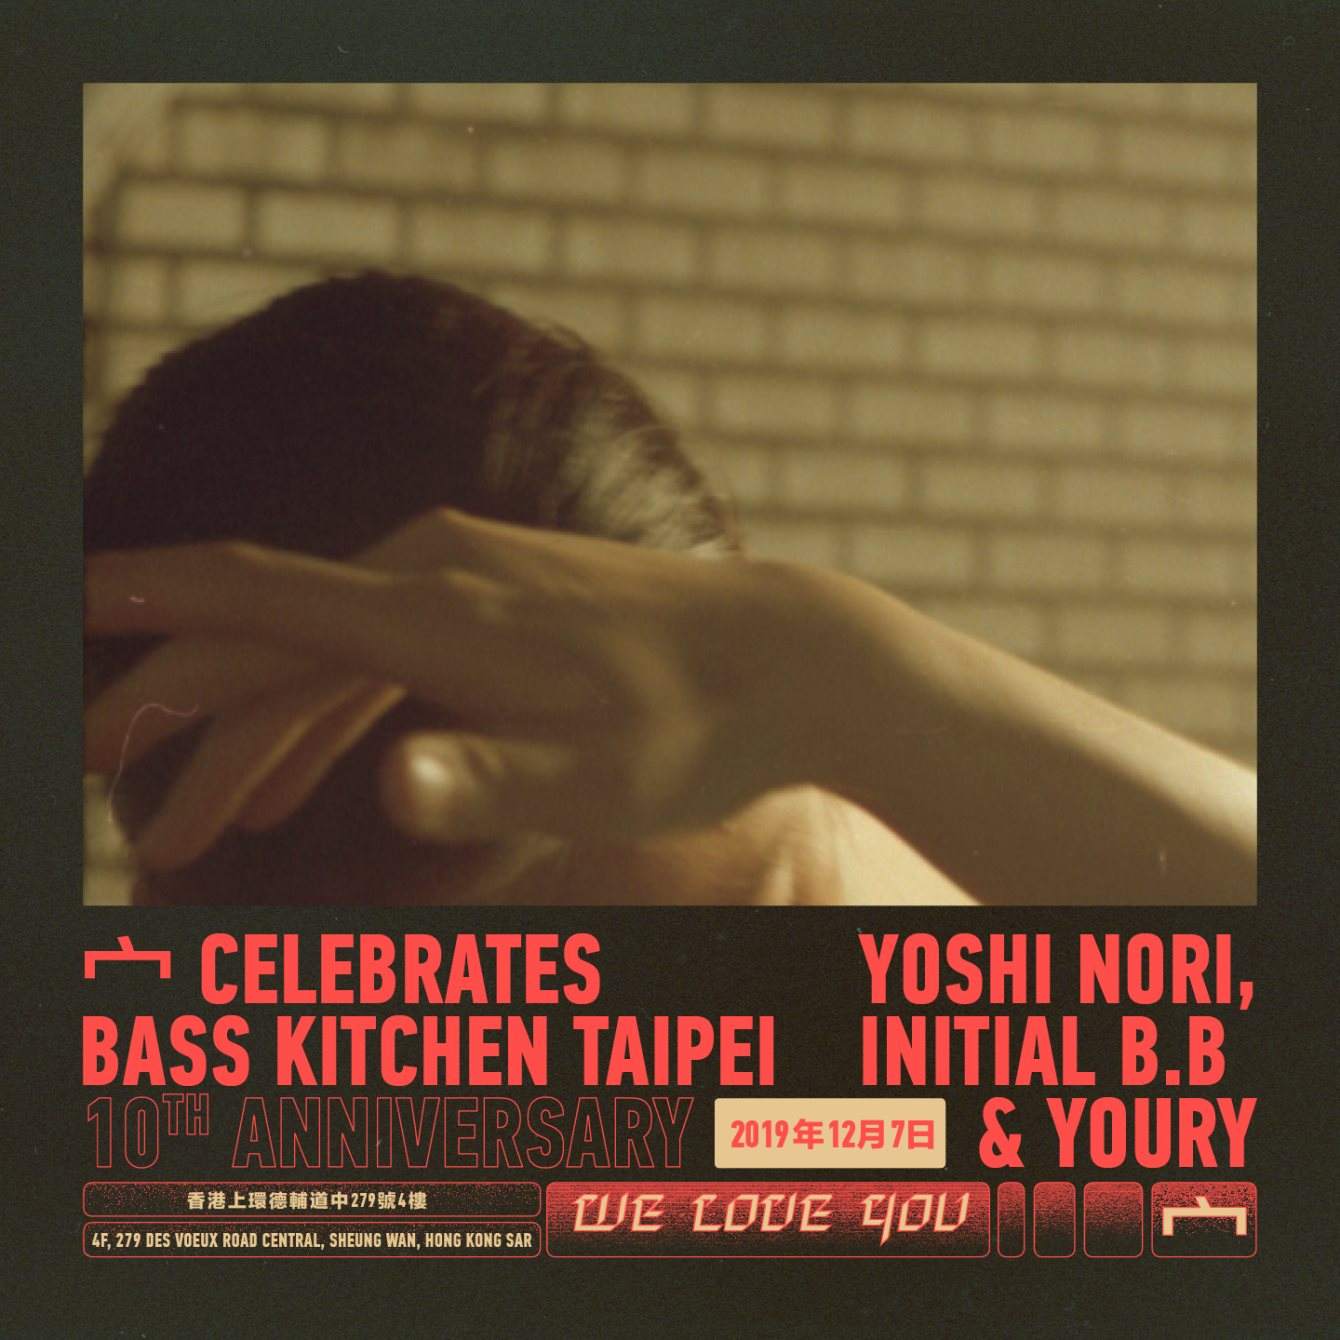 宀 Celebrates Bass Kitchen Taipei 10th Anniversary with Yoshi Nori, Initials B.B. and Youry - フライヤー表